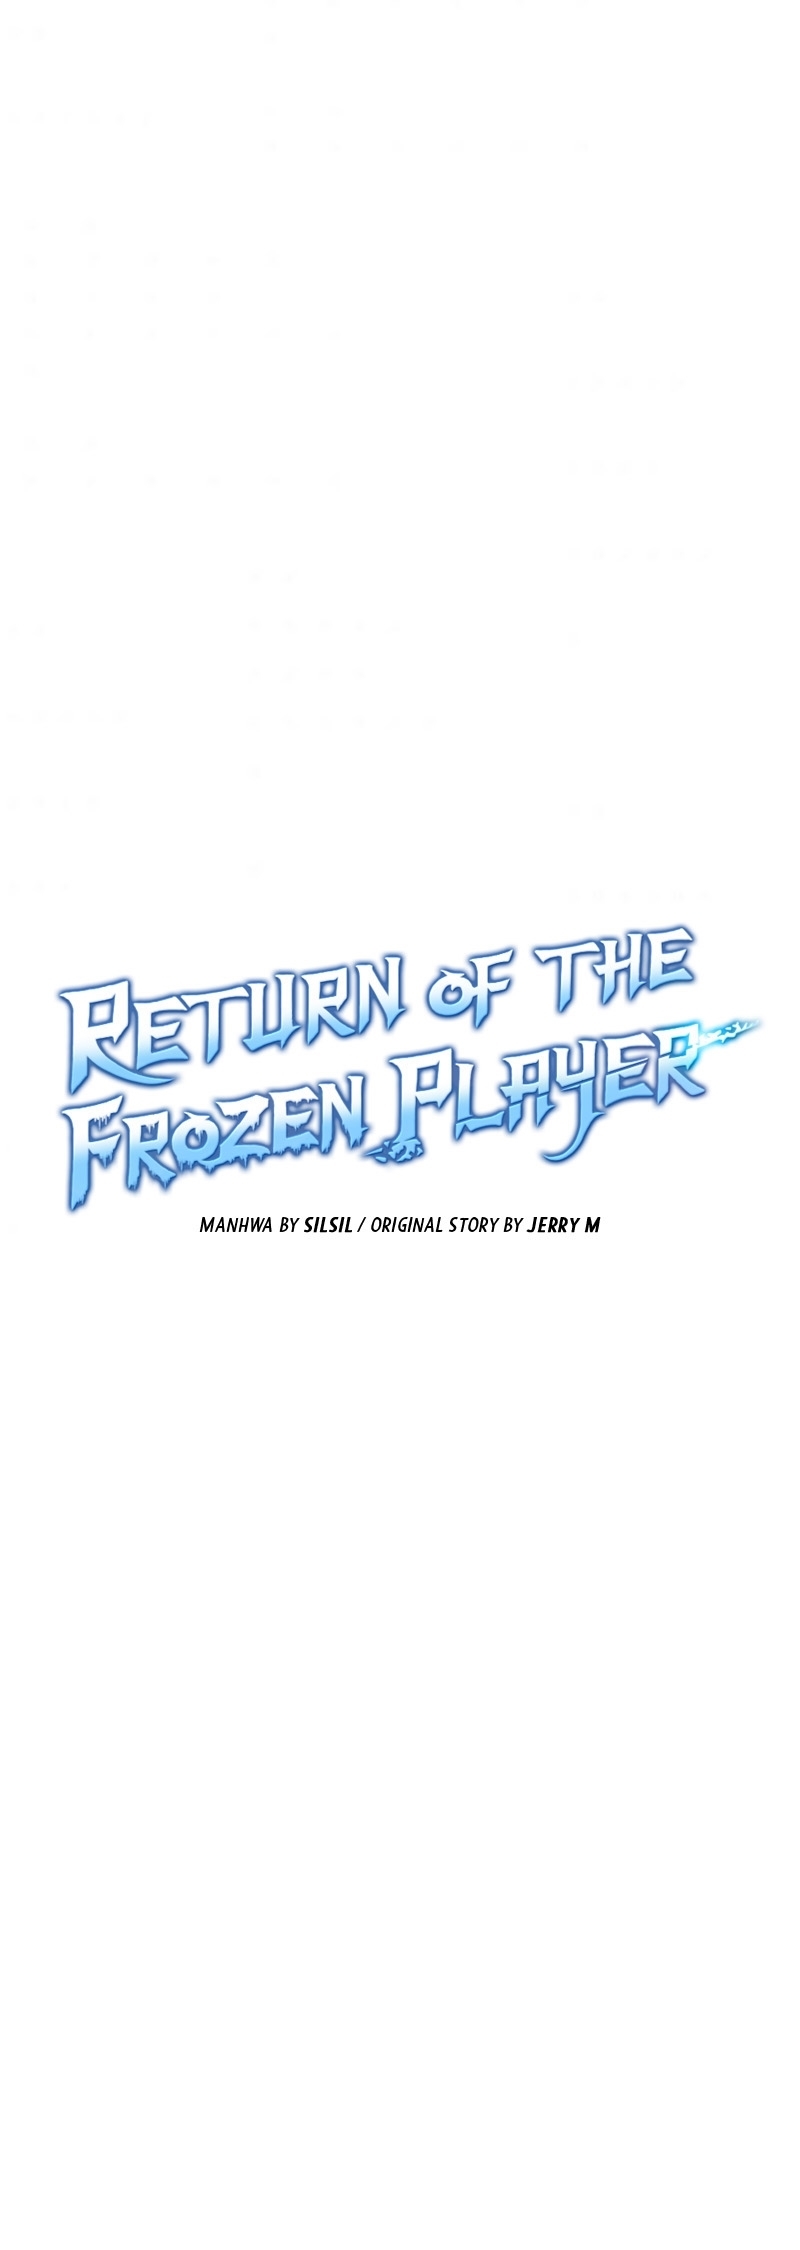 อ่านการ์ตูน Return of the frozen player 38 ภาพที่ 4